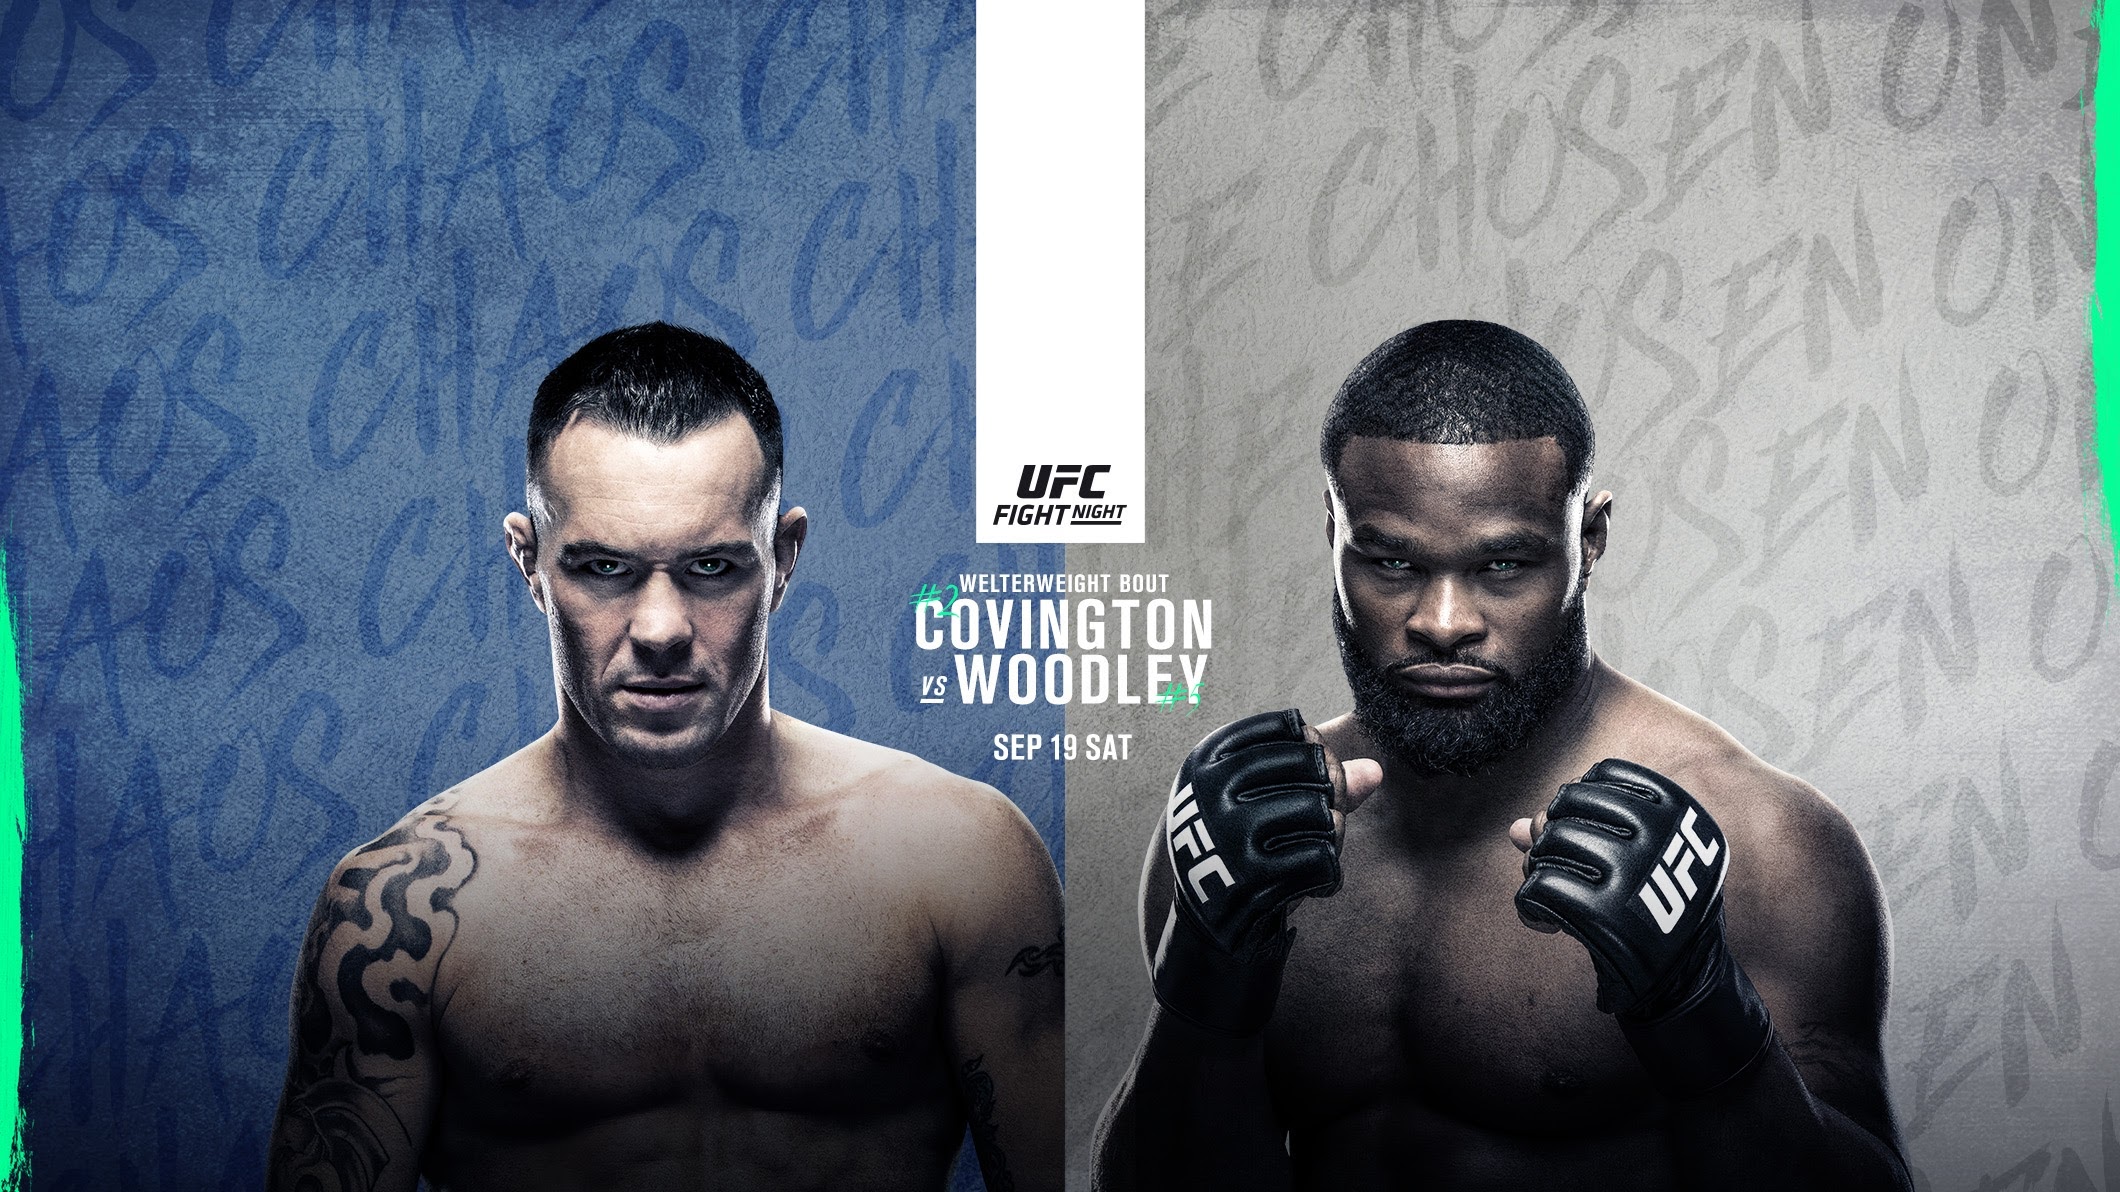 UFC on ESPN+ 36 - Las vegas - Poster et affiche